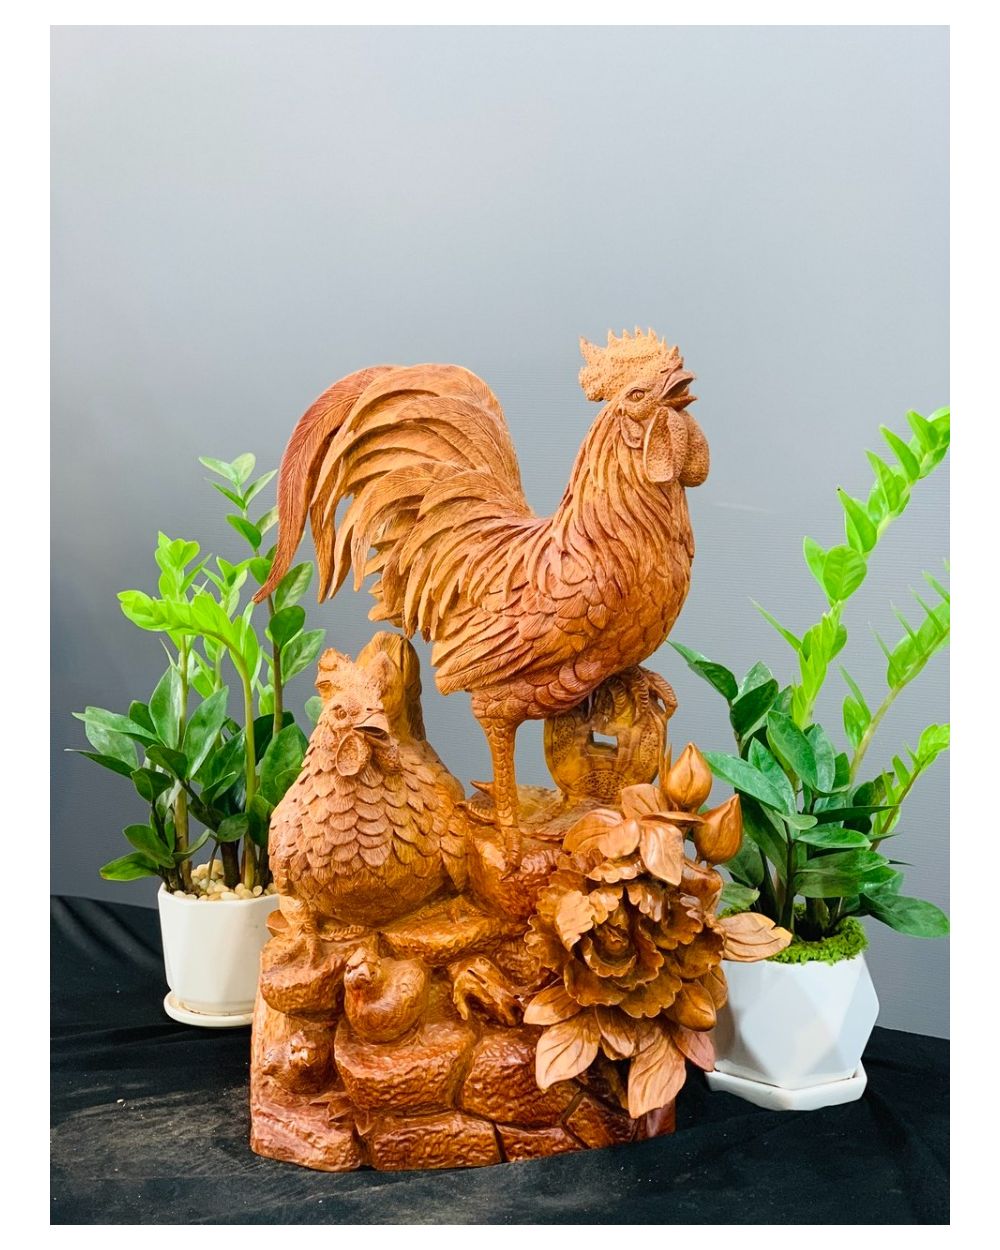 Tượng gỗ con gà phù dung tài lộc là một sản phẩm được rất nhiều người yêu thích. Con gà được xem là biểu tượng của sự may mắn và thành công. Hãy cùng xem những hình ảnh tượng gỗ con gà phù dung tài lộc này để cảm nhận được sức mạnh và ý nghĩa mà nó mang lại.